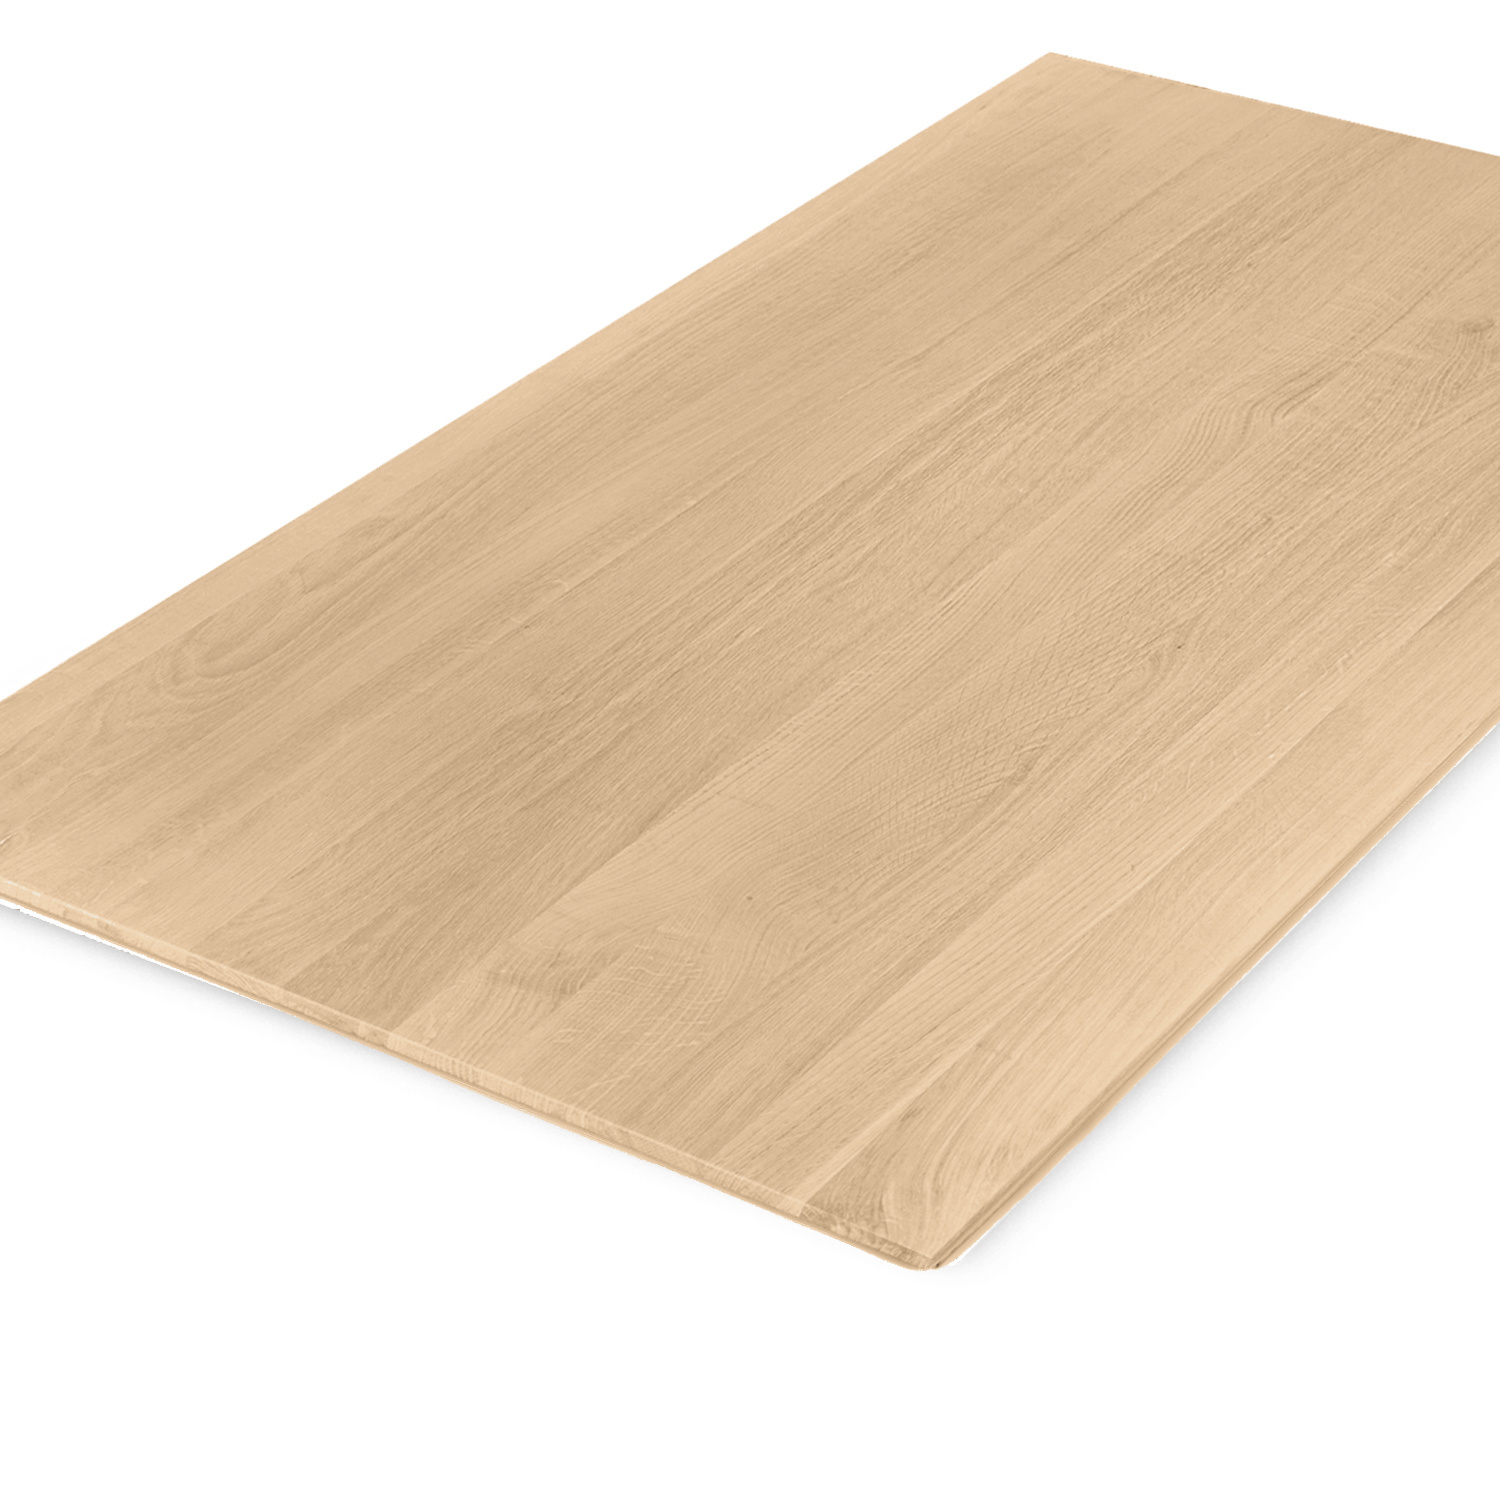  Tischplatte Eiche - Schweizer Kante - nach Maß - 4 cm dick (1-Schicht) - Breite Lamellen (10 - 12 cm breit) - Eichenholz A-Qualität - verleimt & künstlich getrocknet (HF 8-12%) - 50-120x50-248 cm